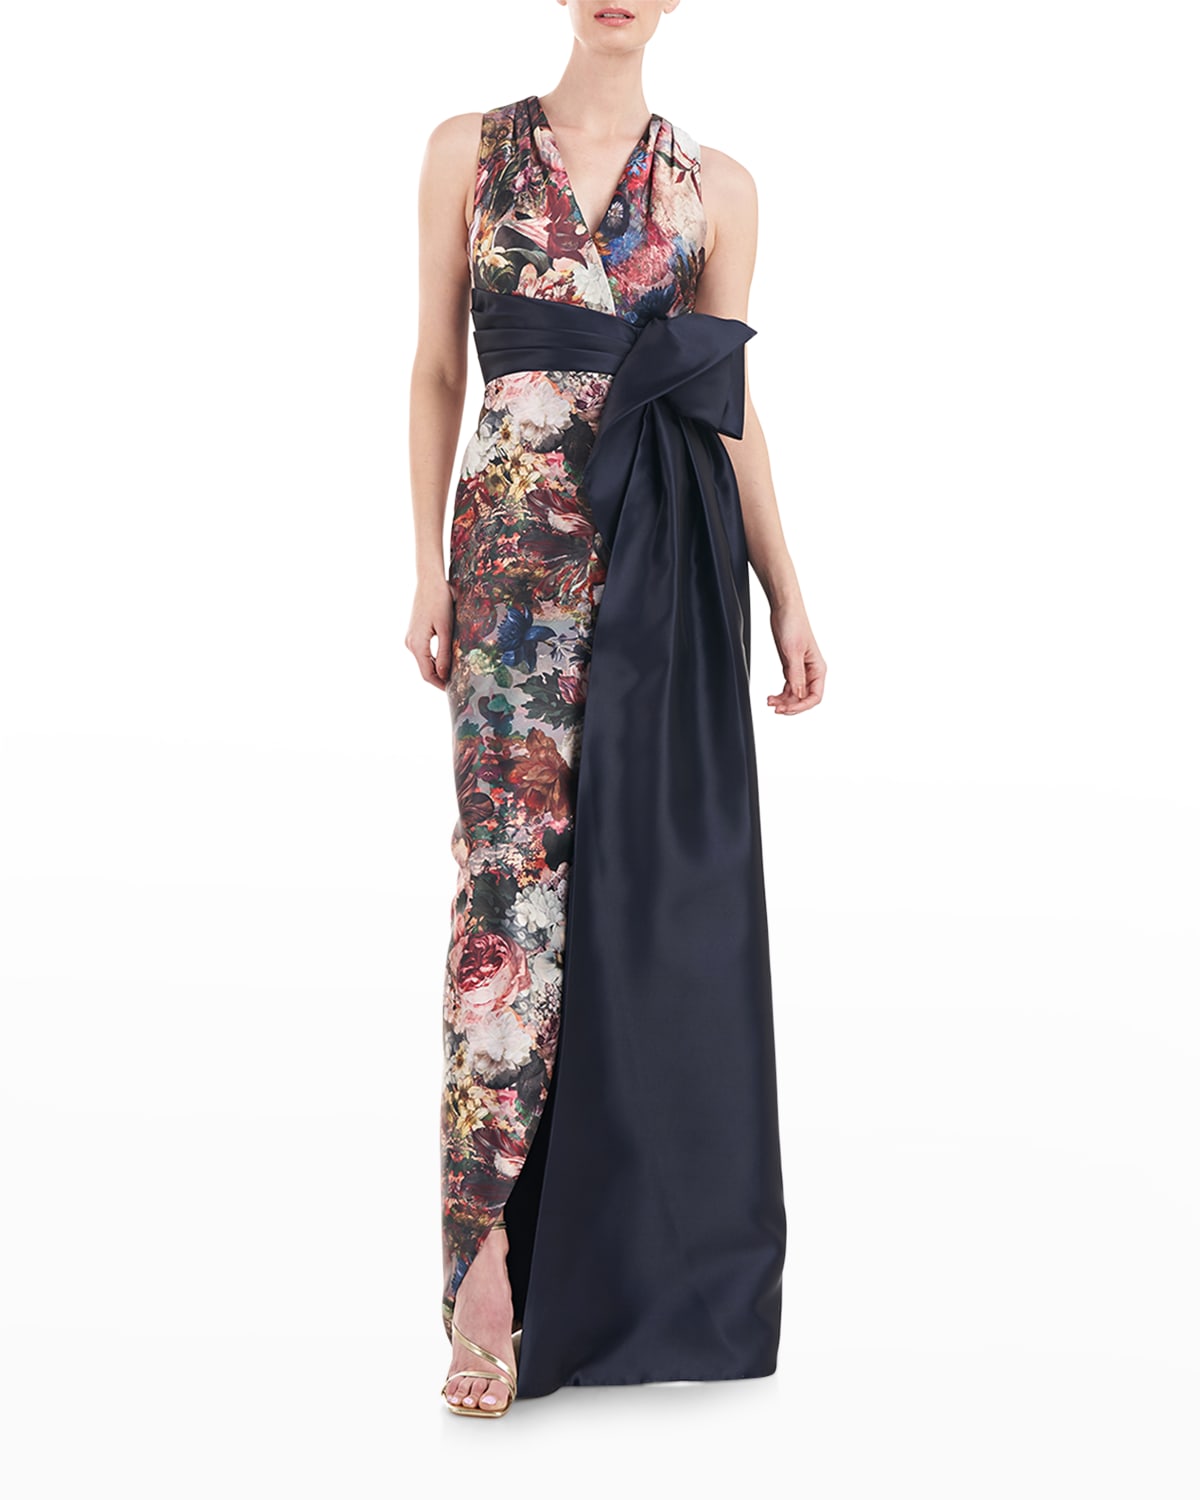 Rachel Floral Side-Drape Halter Gown